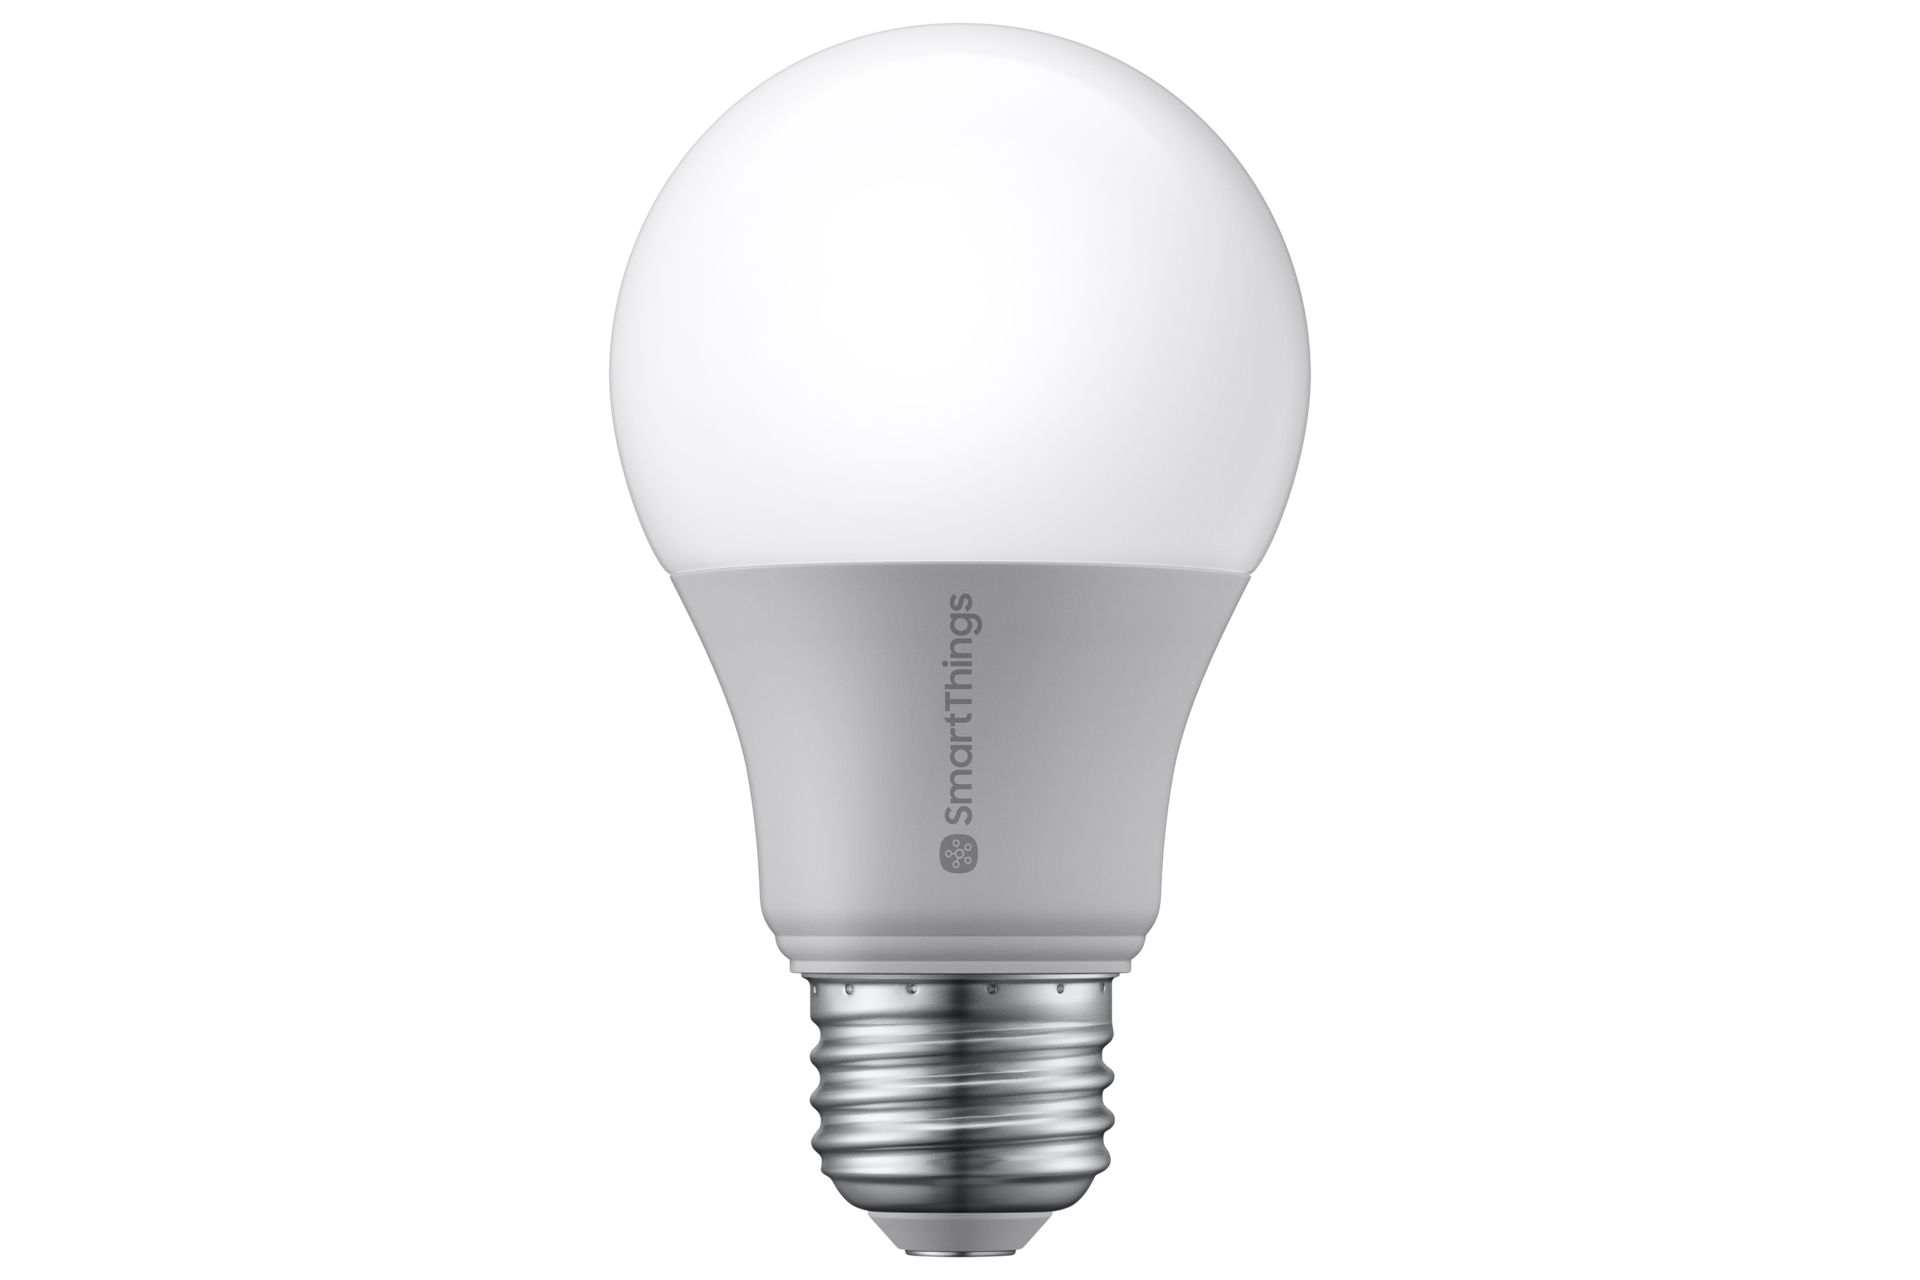 Plan marketing pour les ampoules rechargeables